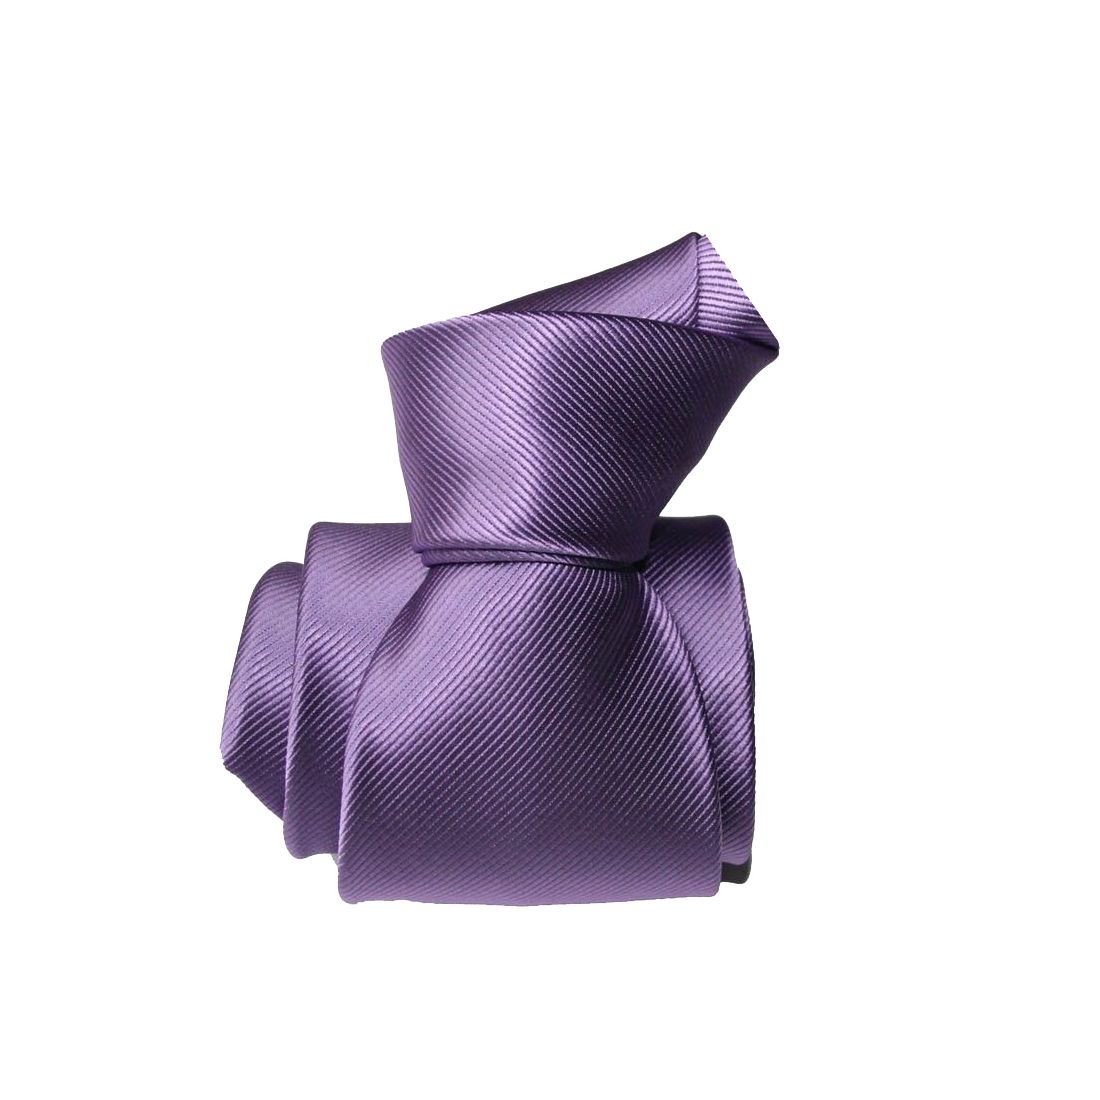 Cravate Charles Le Jeune Monochrome Violet Lilas Microfibre Uni Homme